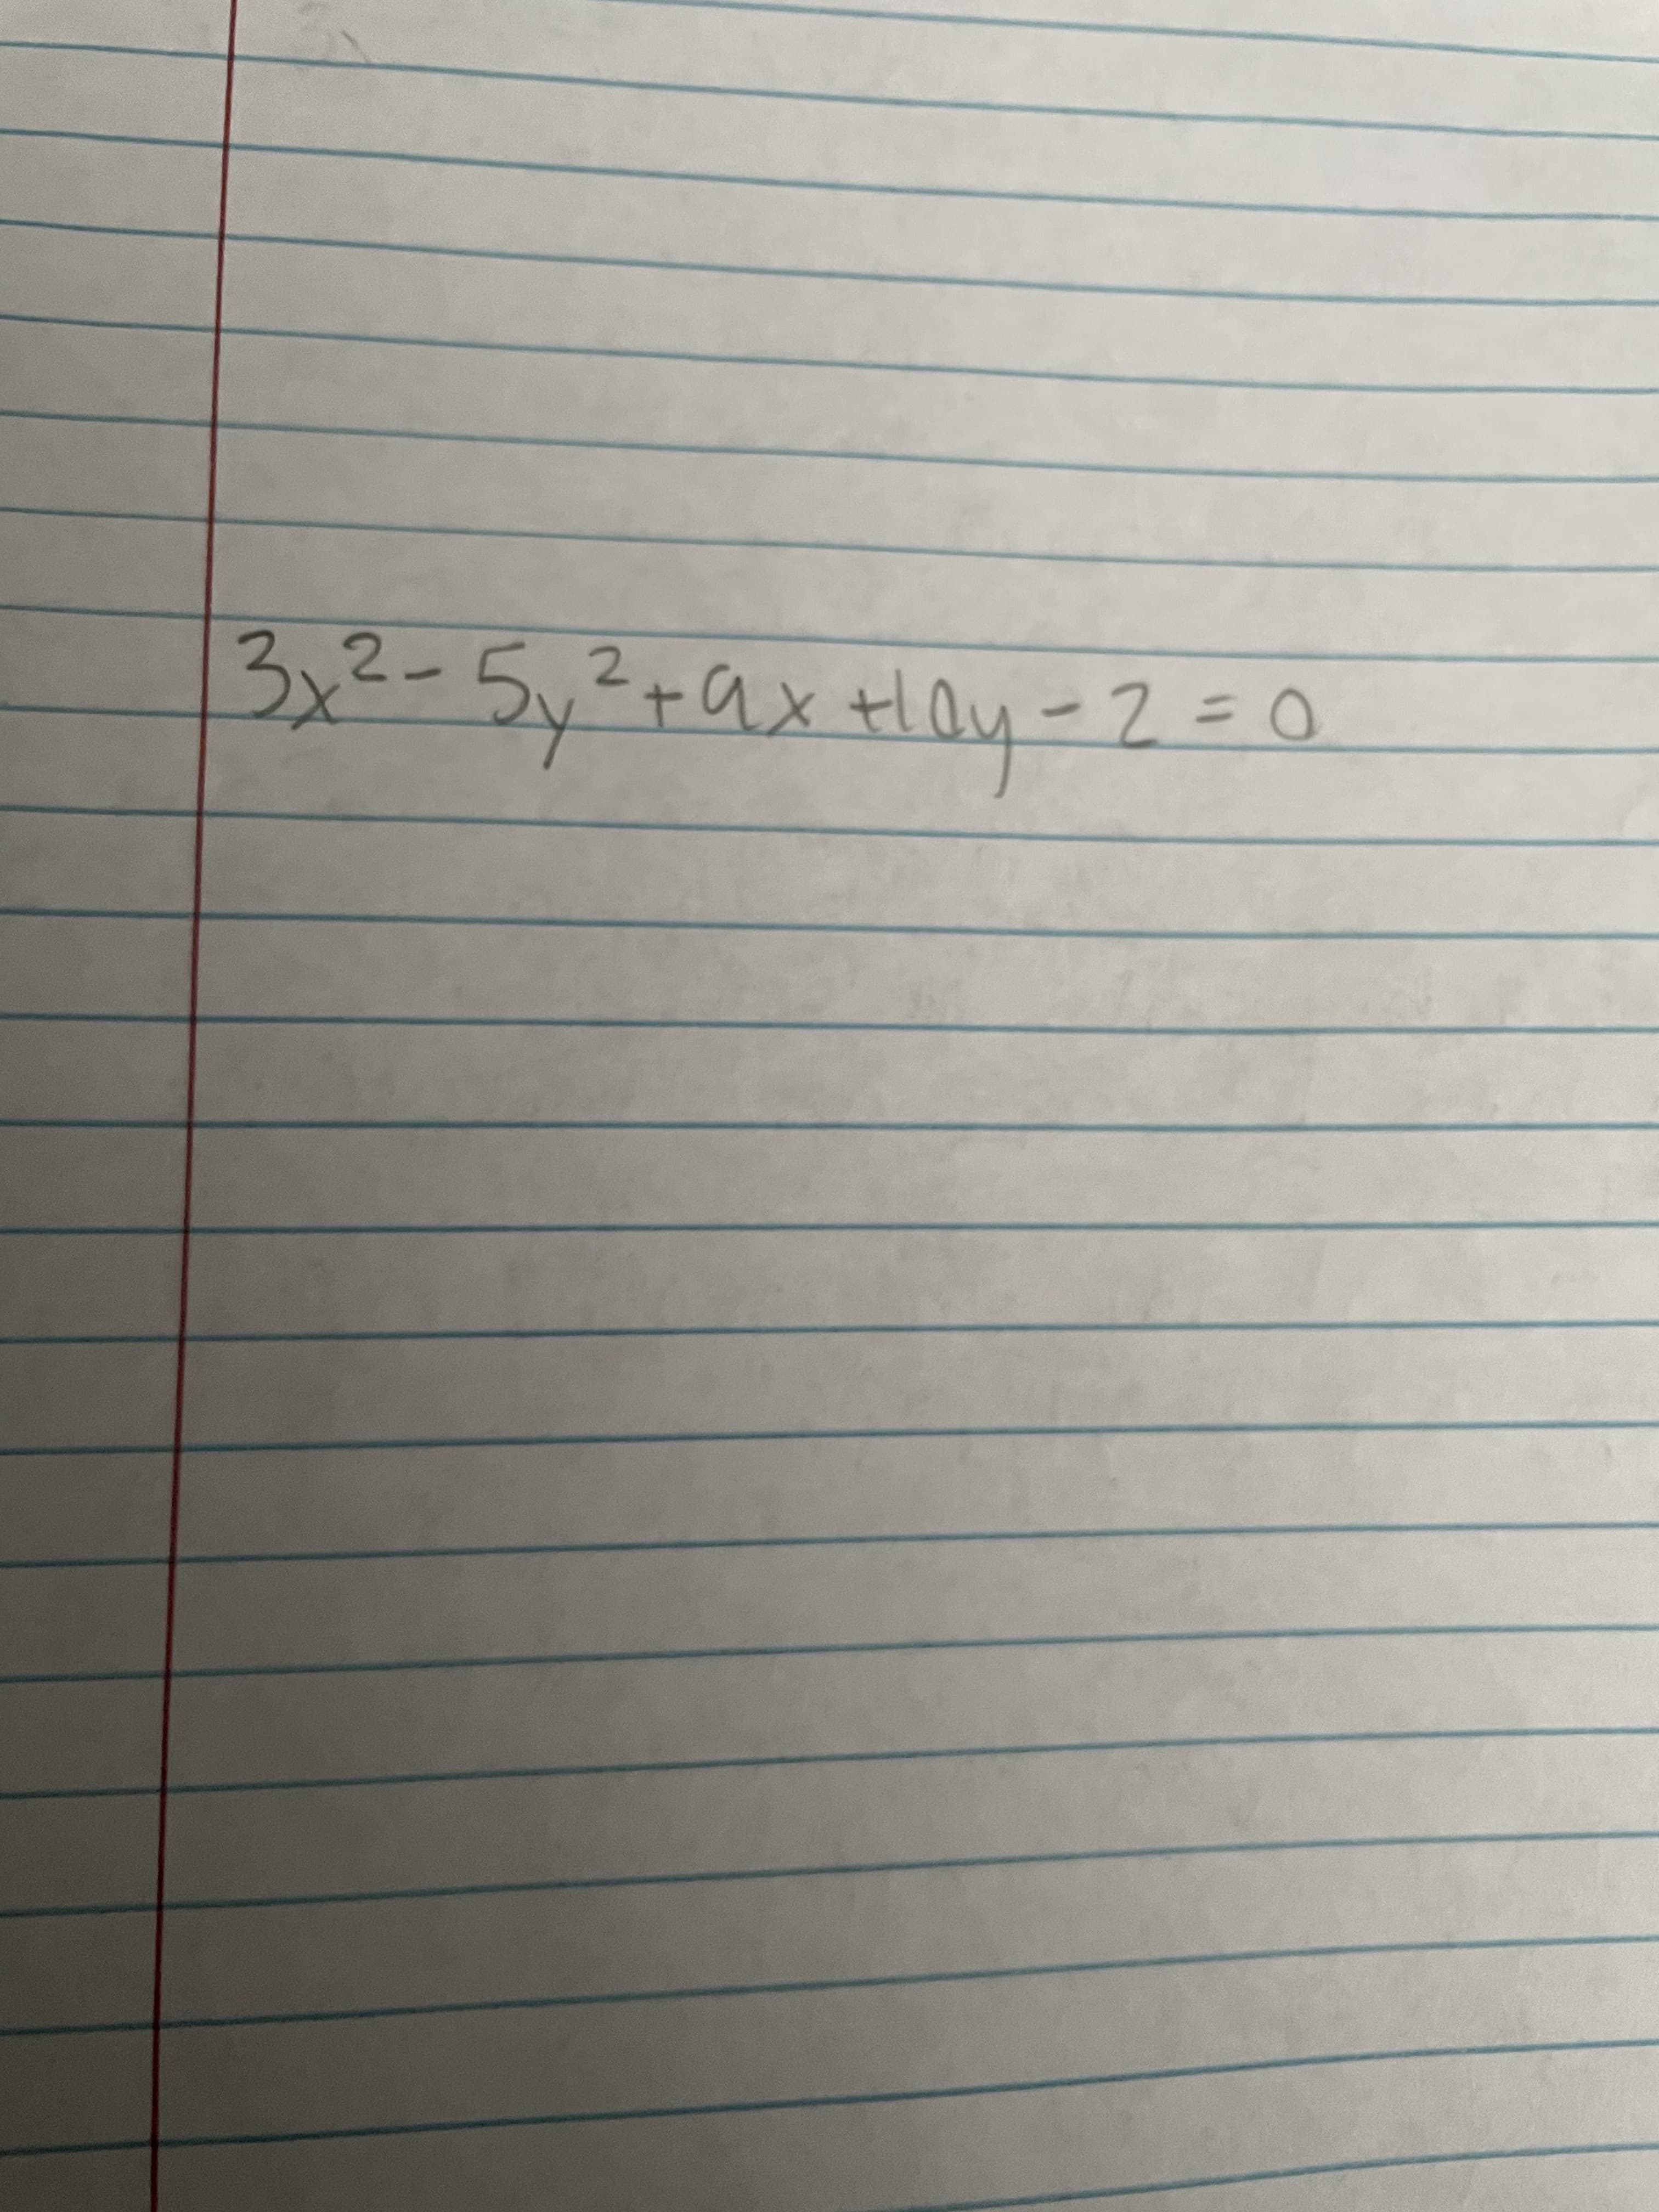 3x2-5,²+ax tlQy-2=0
